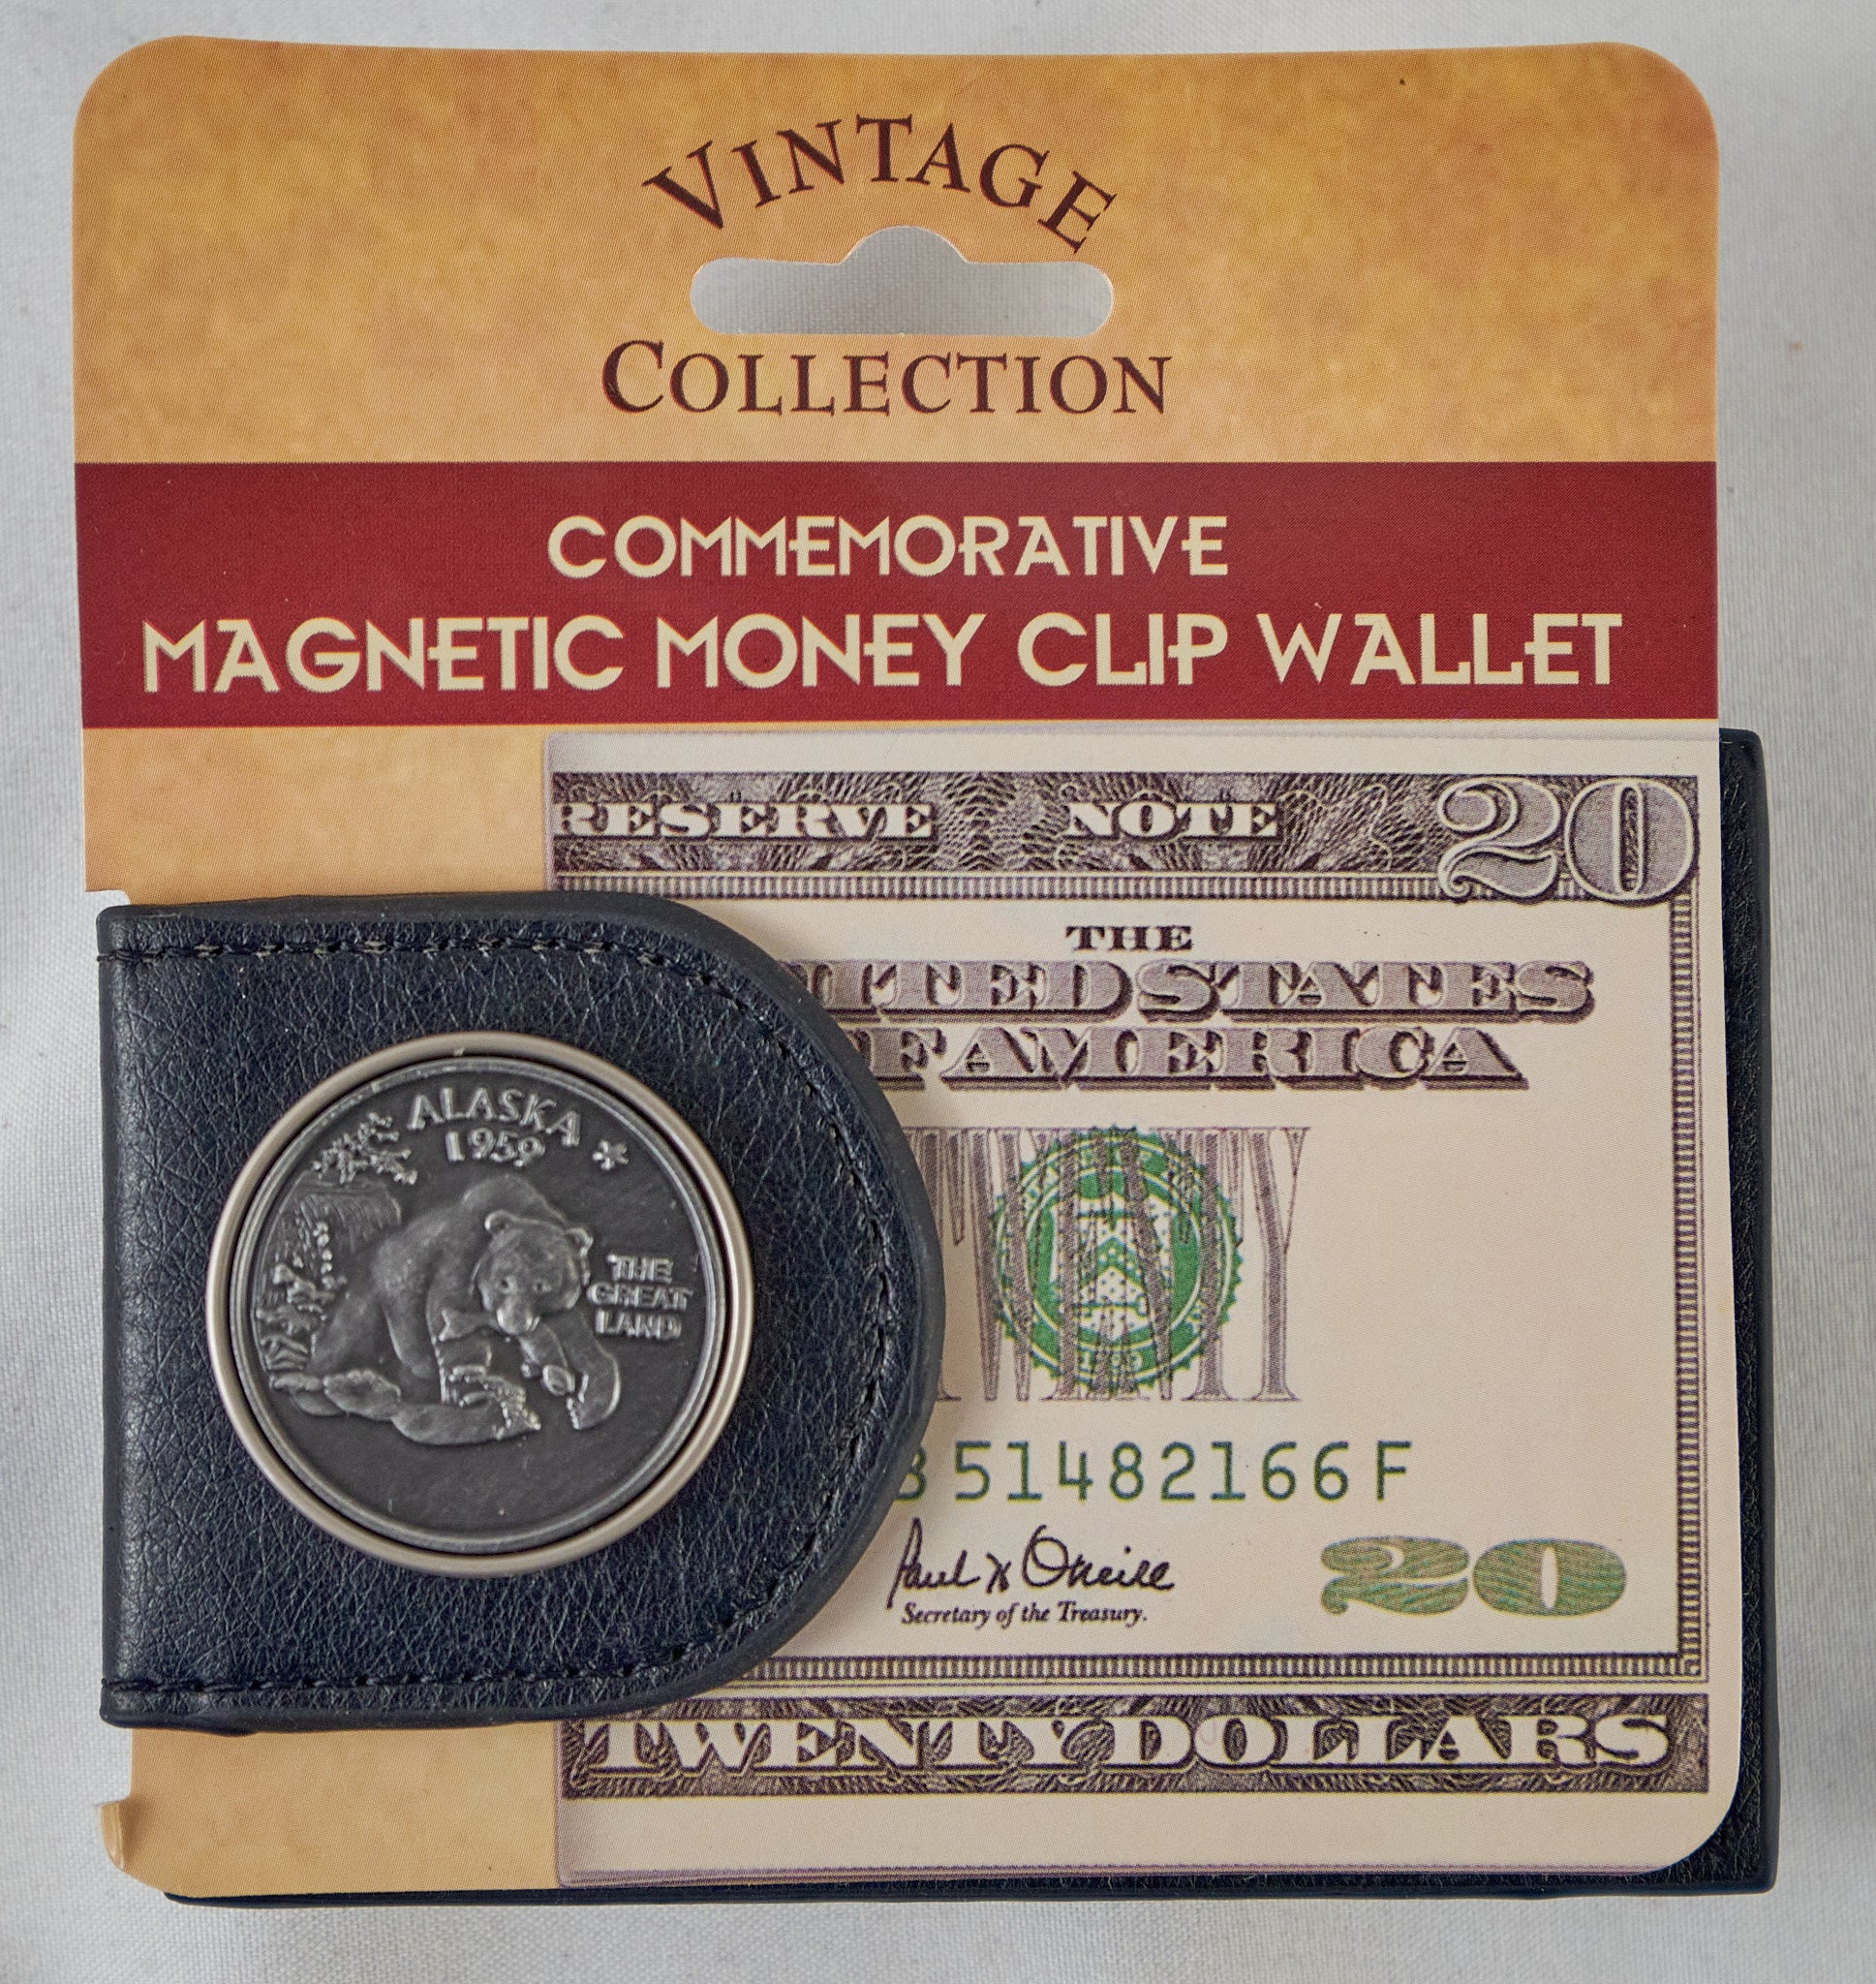 Bear Alaska Magnetic Money Clip Wallet